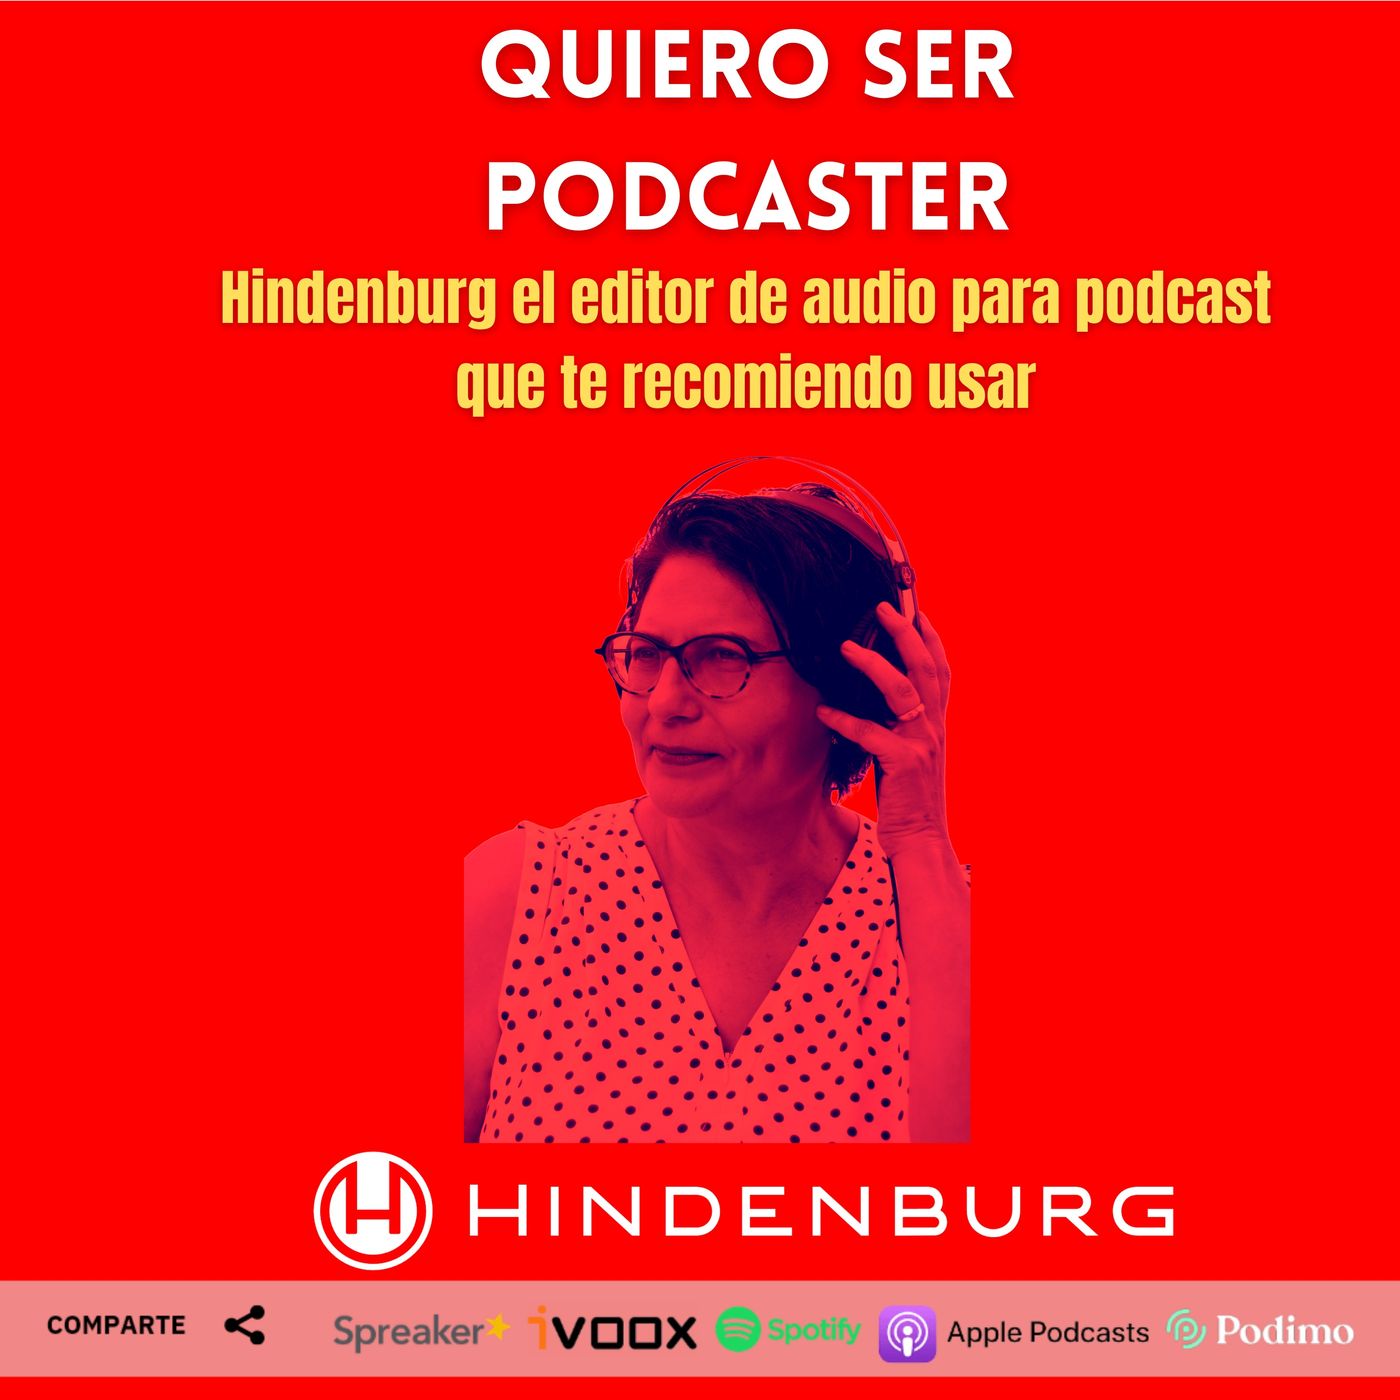 Hindenburg el editor de audio para podcast que te recomiendo usar @HindenburgNews